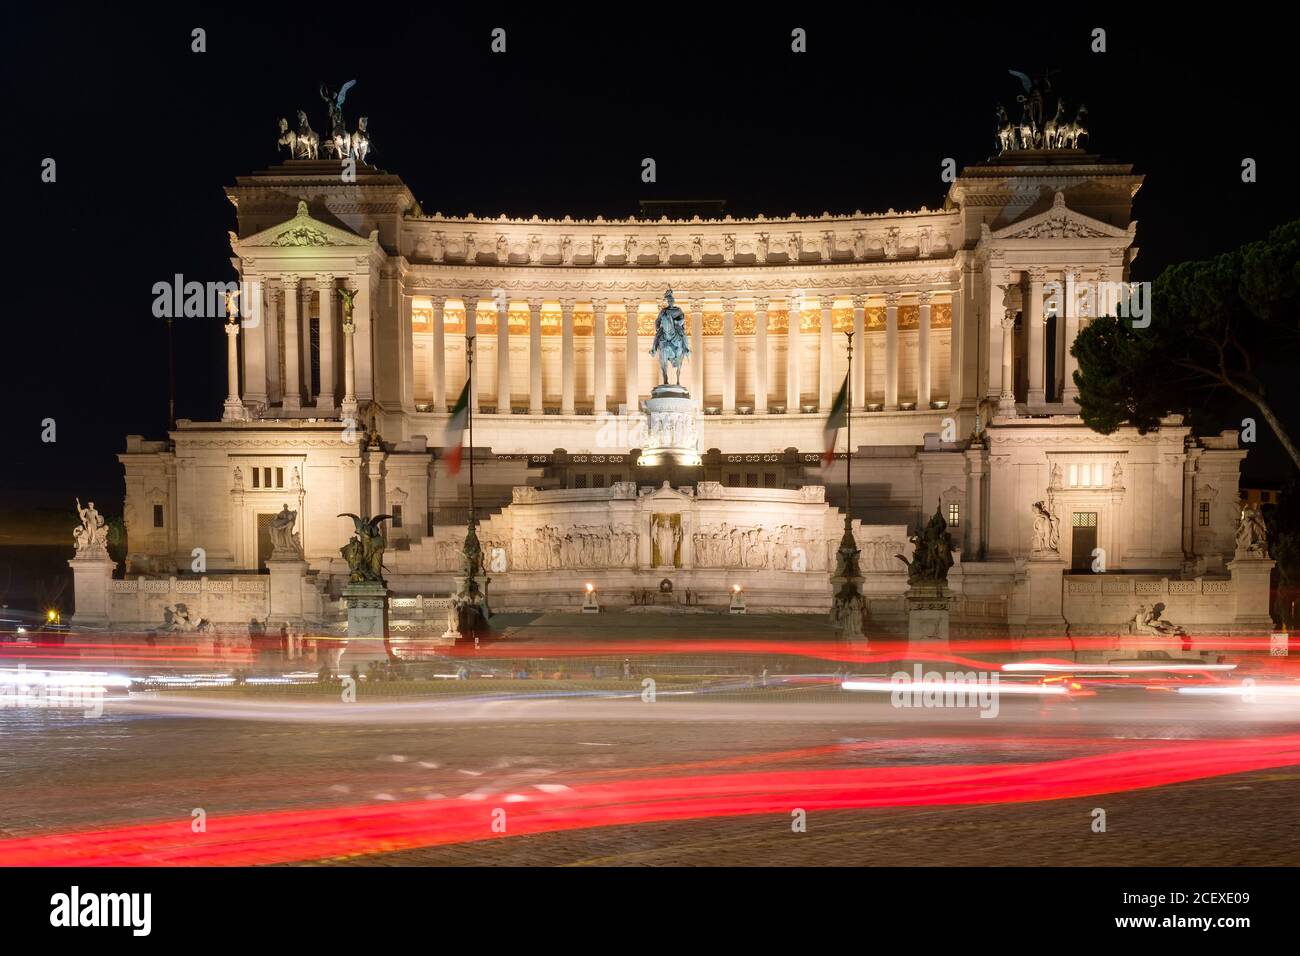 Illuminato il monumento di Vittorio Emanuele II nel centro di Roma di notte con sentieri leggeri dal traffico in transito Foto Stock